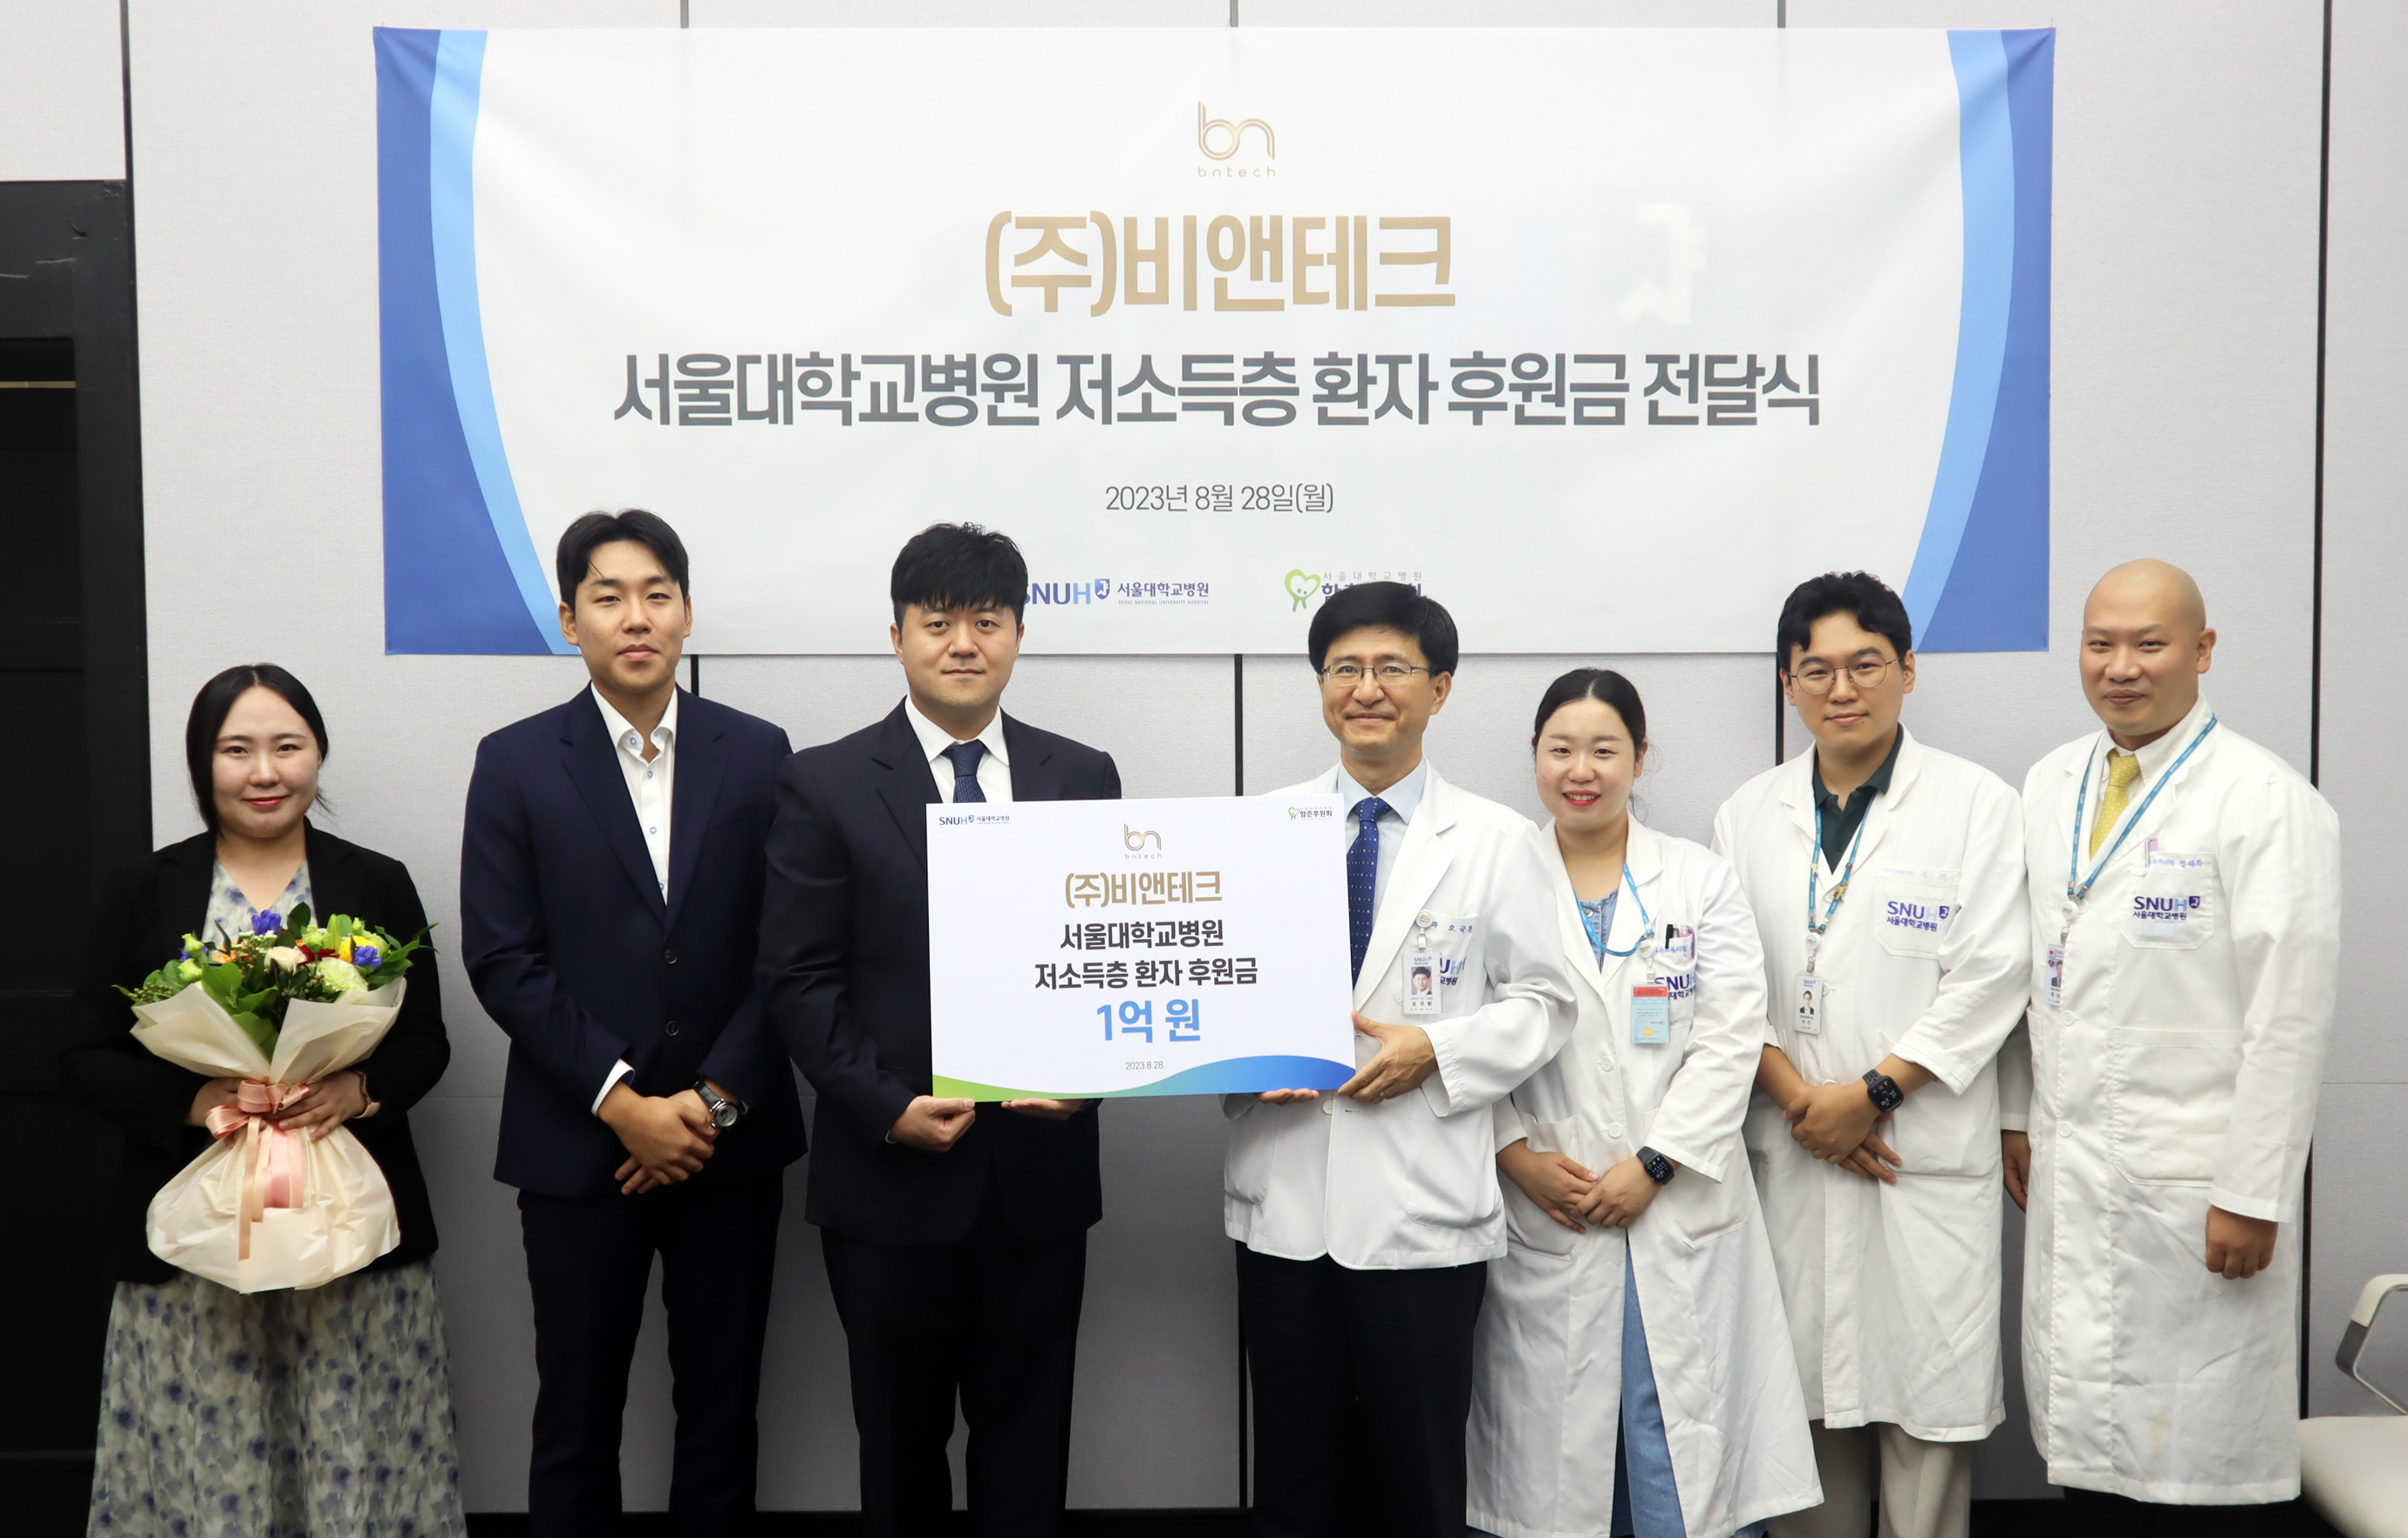 [병원뉴스]서울대병원, 저소득층 환자에게 희망 전하는 후원금 전달받아